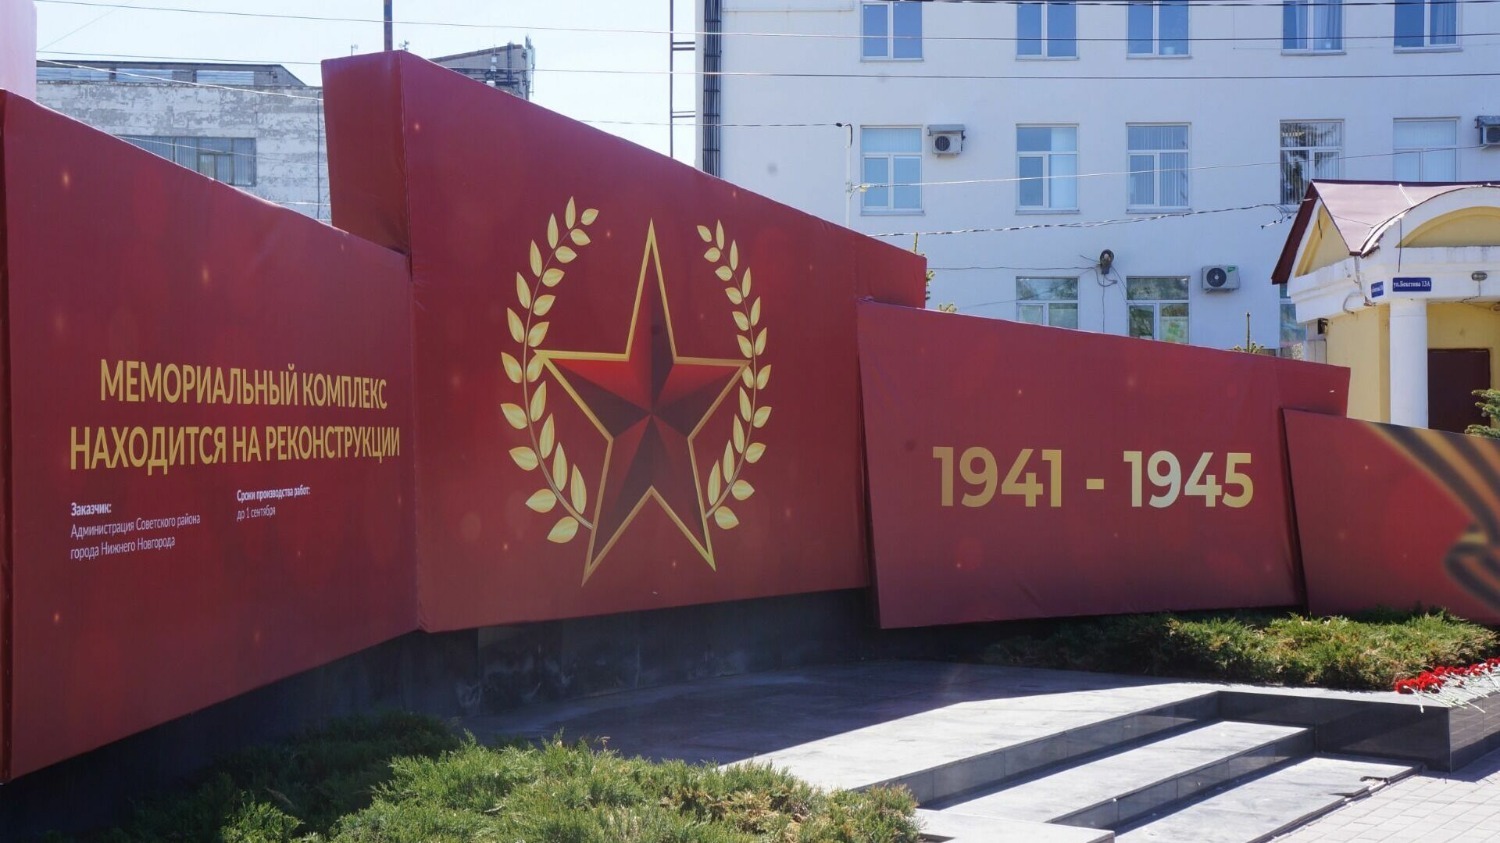 К концу весны сквер Сталинградской битвы выглядел удручающе